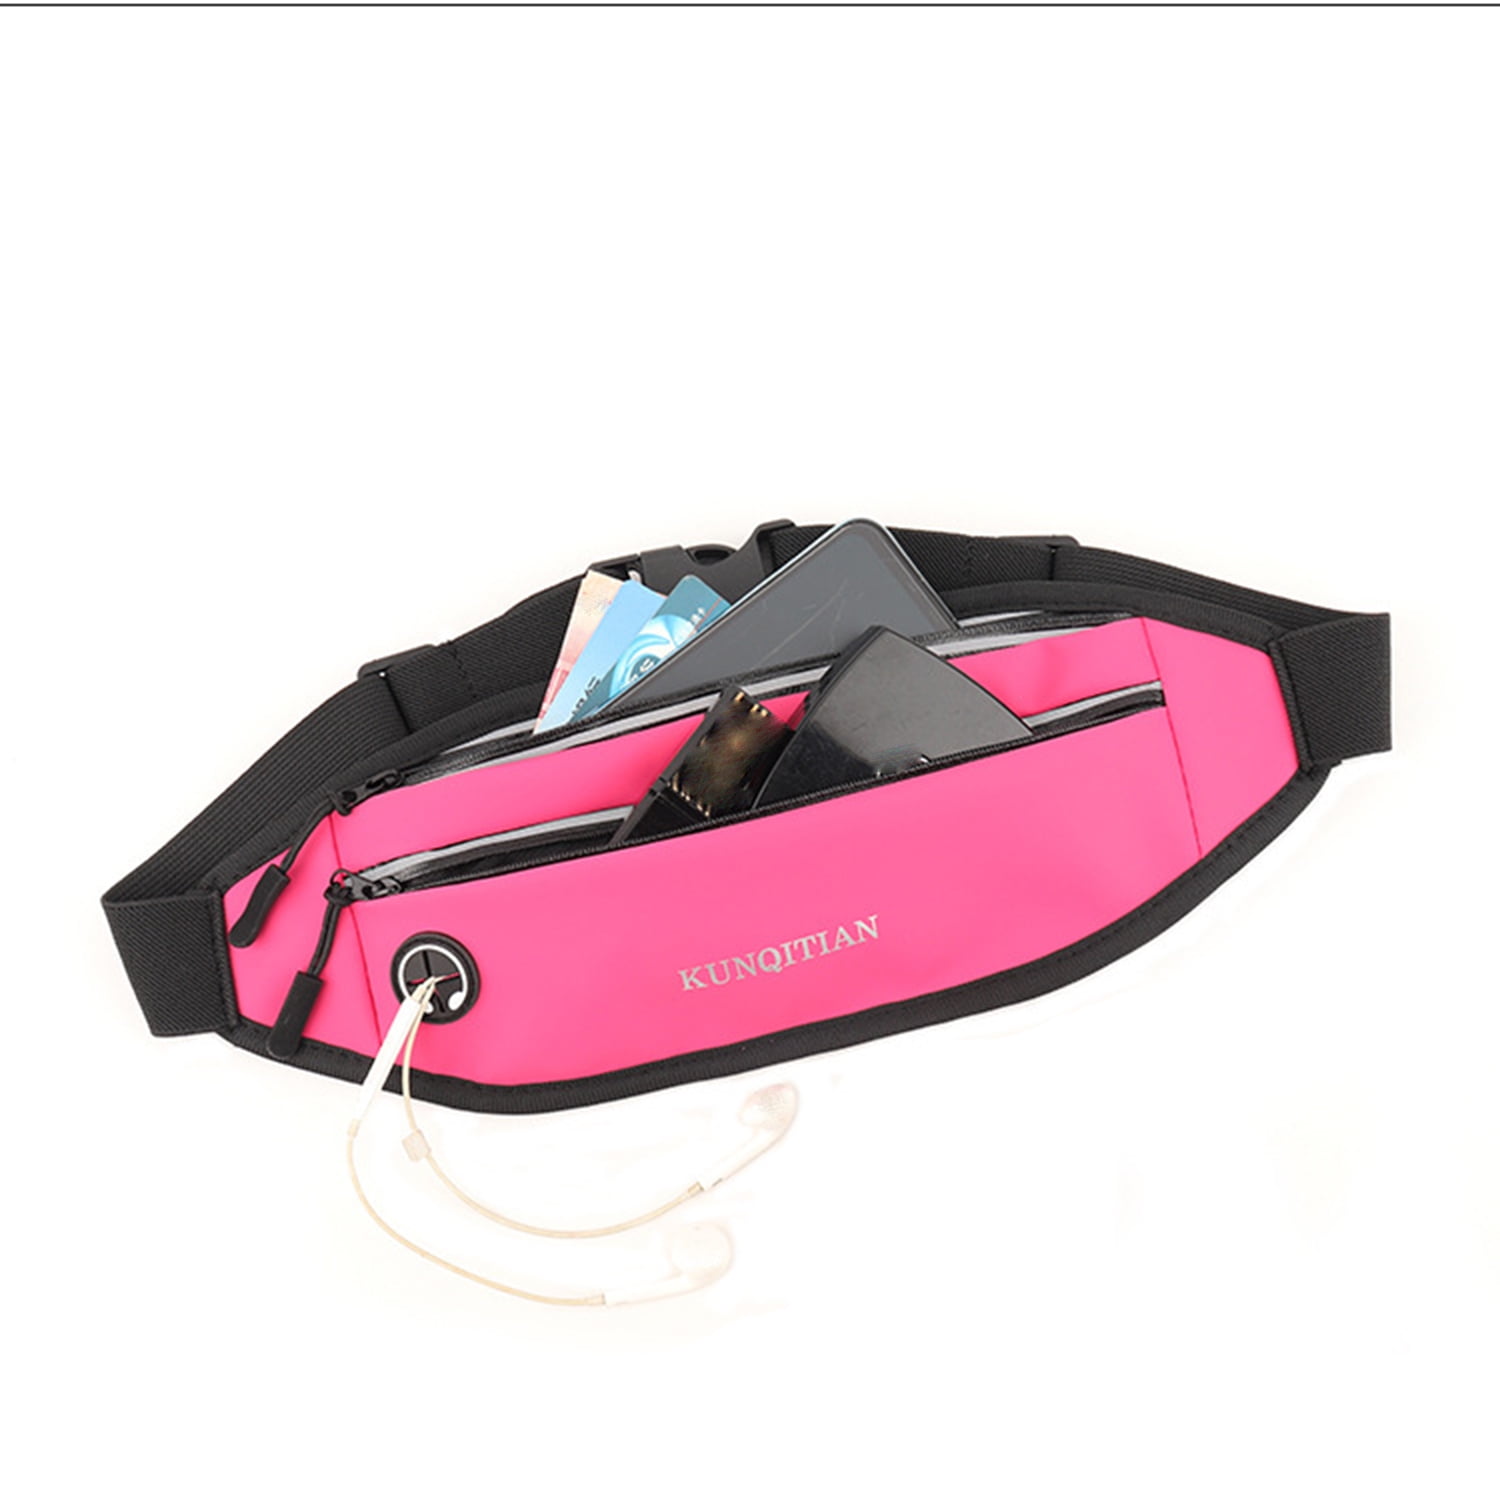 Olixar Adjustable Running Belt With 2 Bottle Holders & Pouch - Black